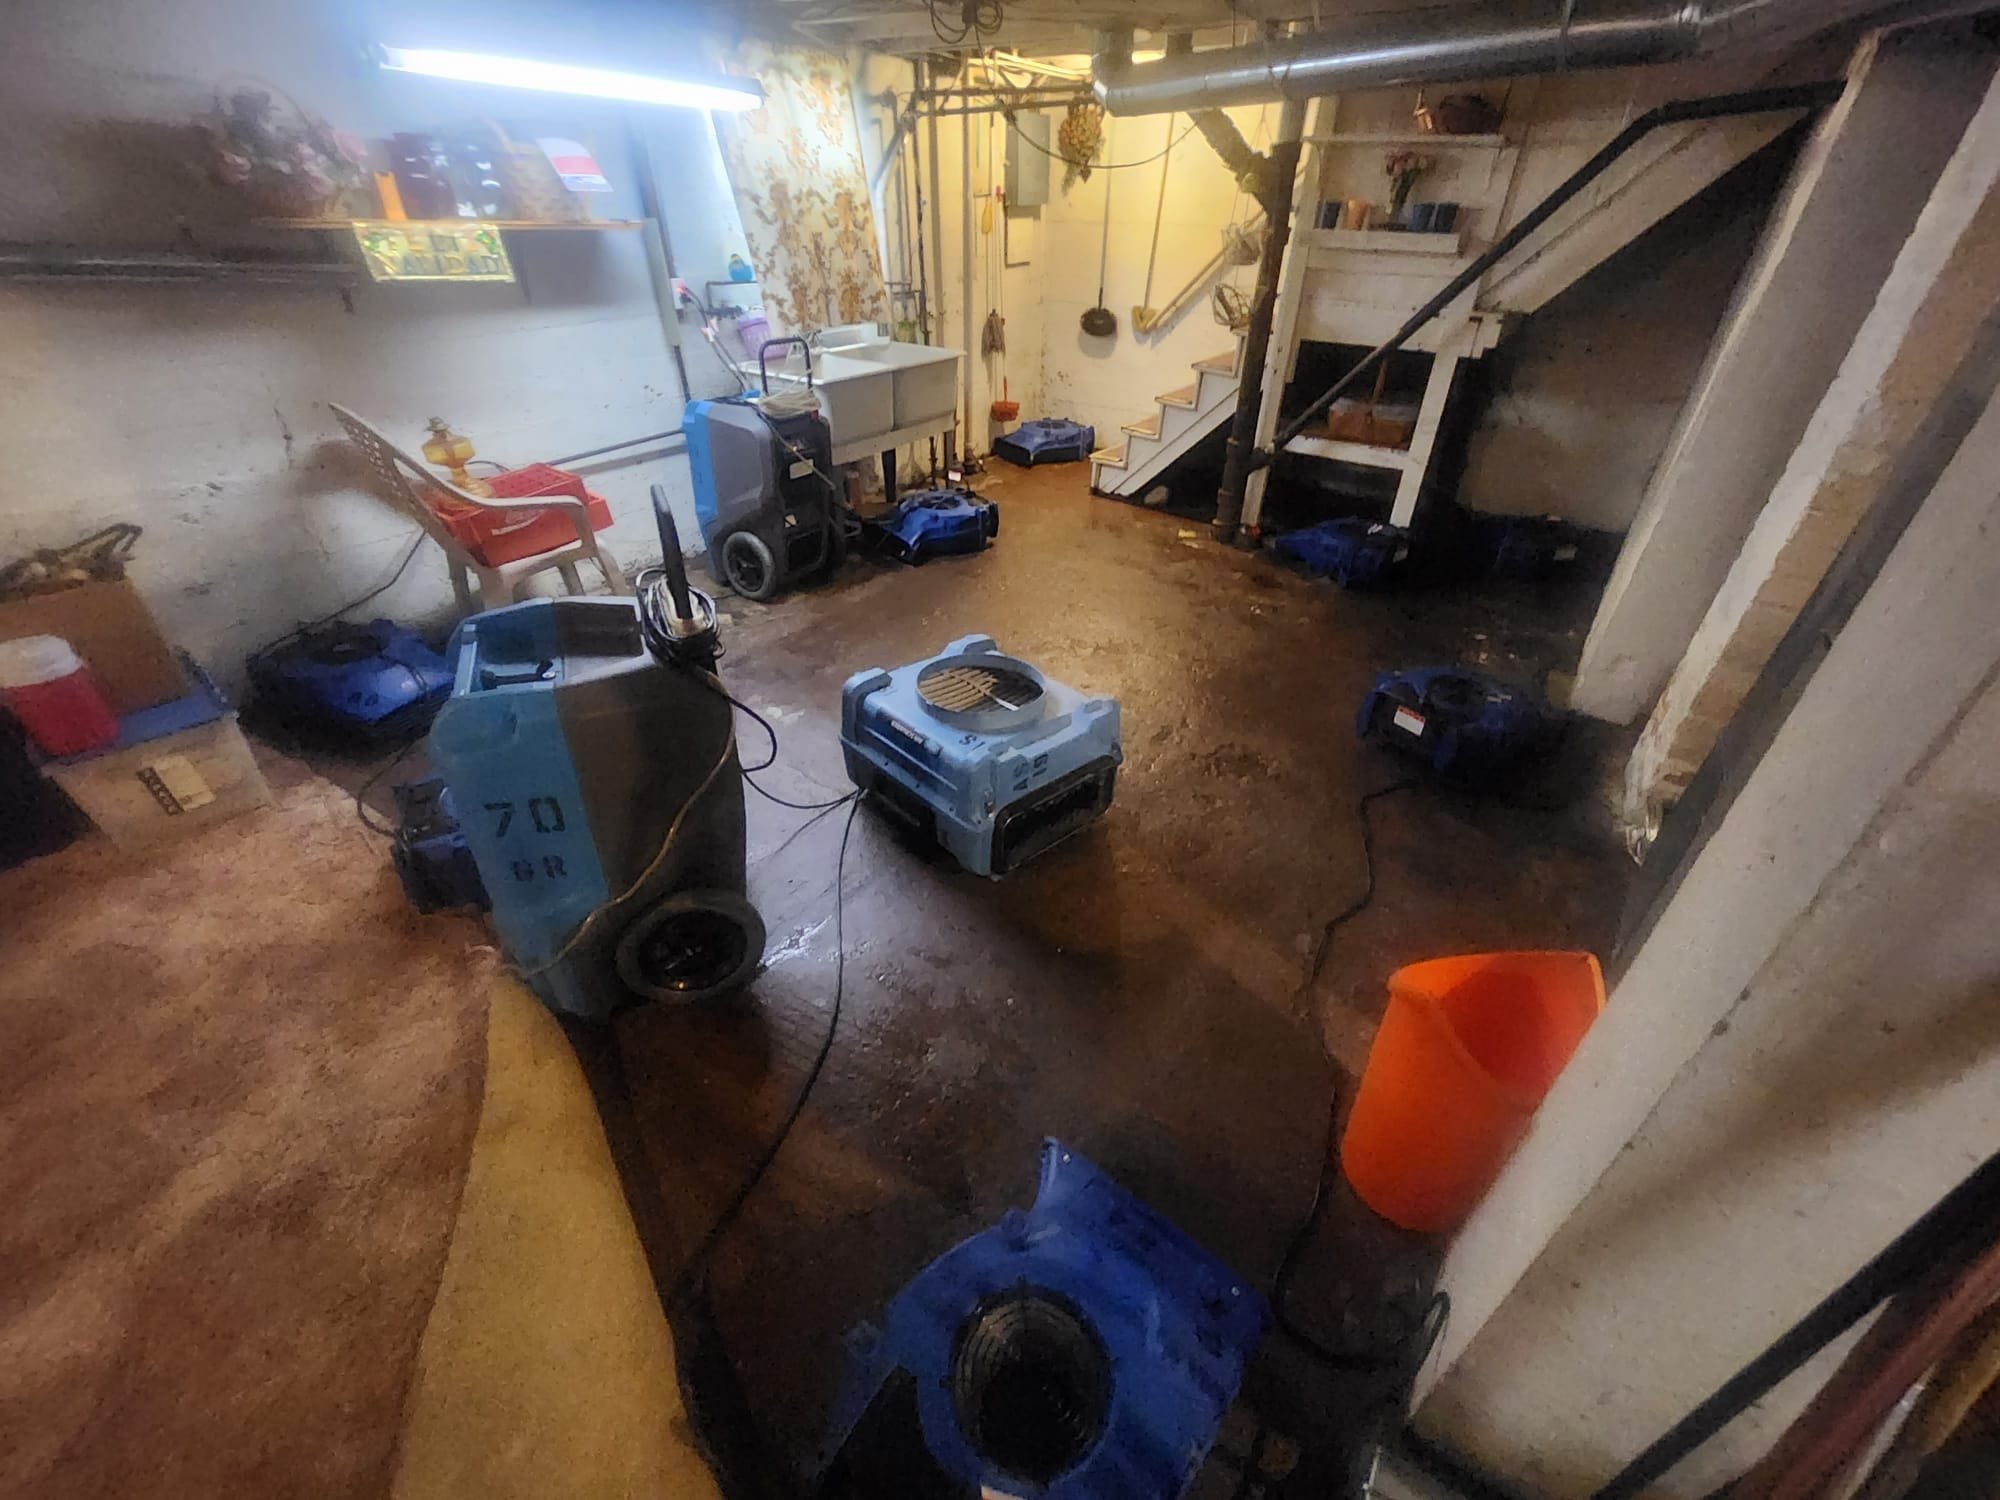 Sewage backup in basement in Muskegon, MI